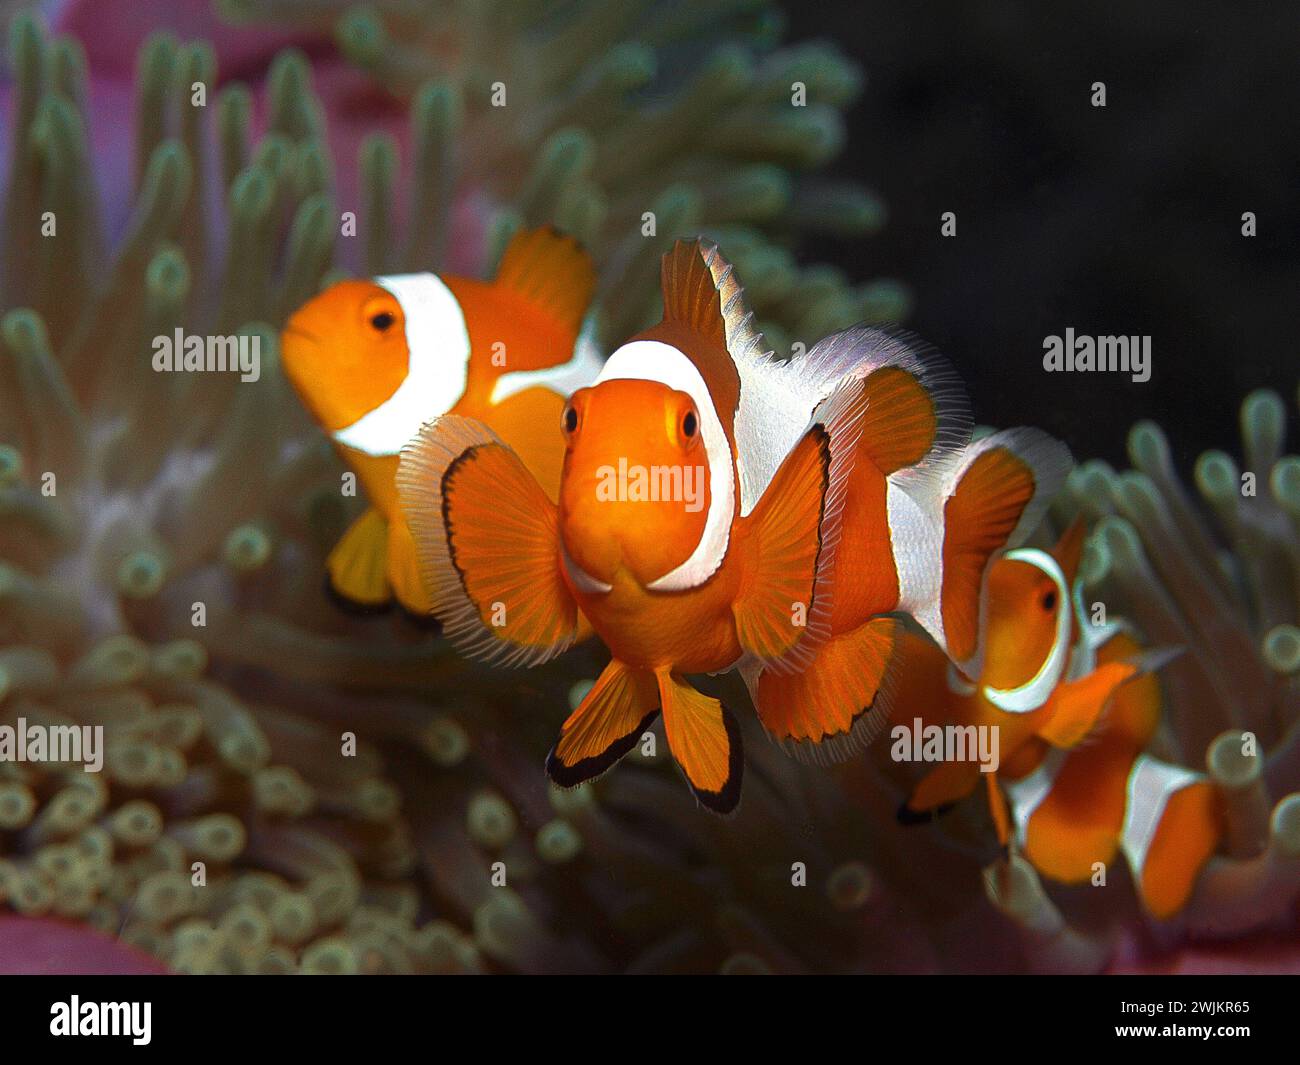 Anemonefish: Trío de pez payaso (Amphiprion ocellaris, Payaso anemonefish) en su anémona. Fotografía submarina, arrecife de coral en Raja Ampat, Indonesia Foto de stock